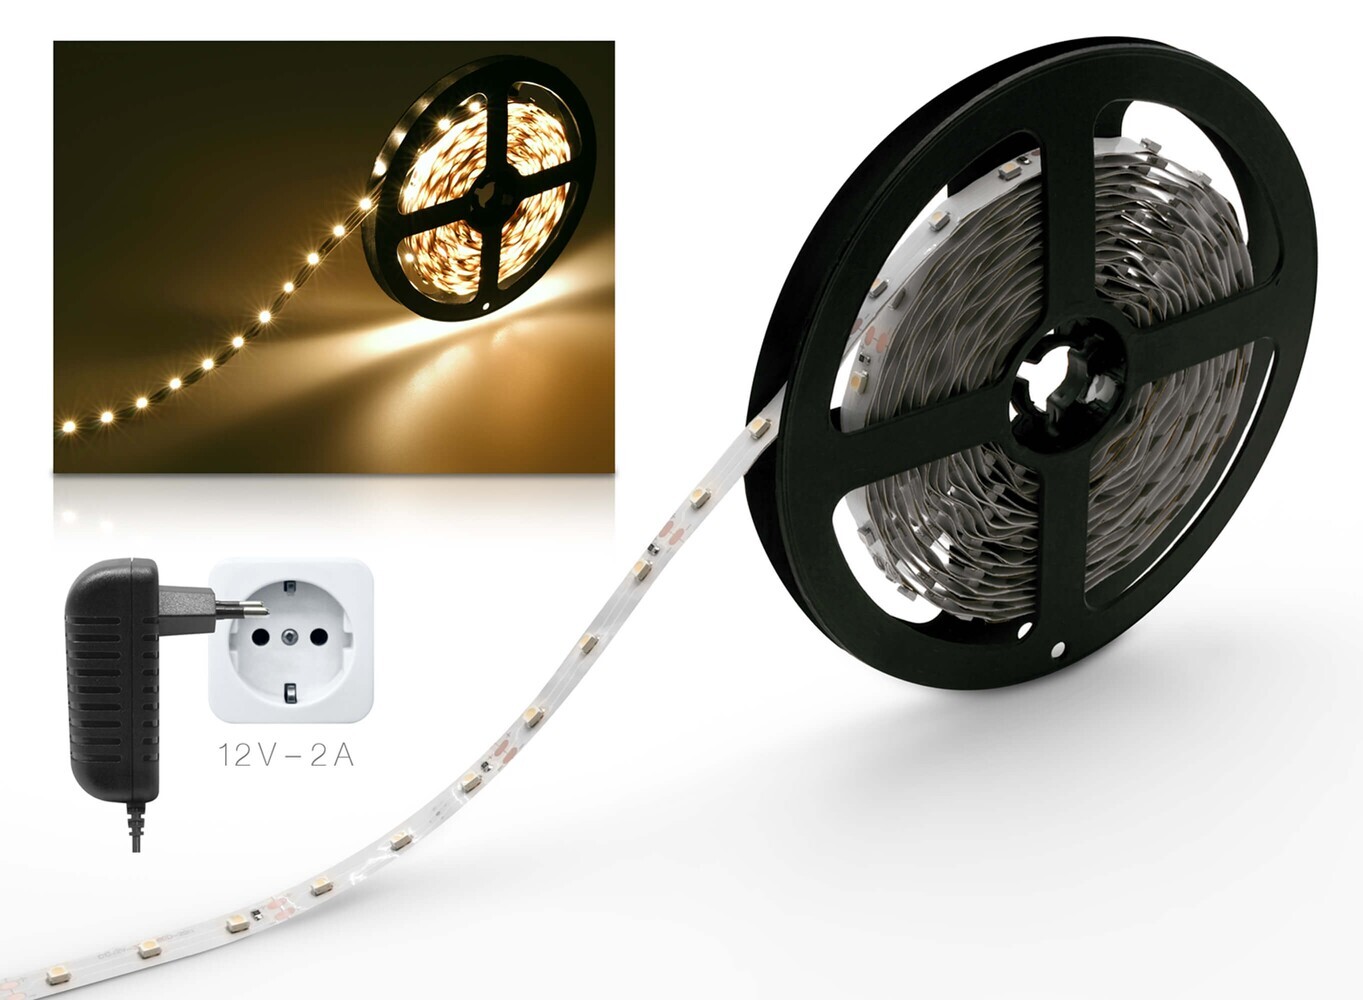 Hochwertiger LED Streifen von LED Universum in warmweiß, besonders hell und energieeffizient